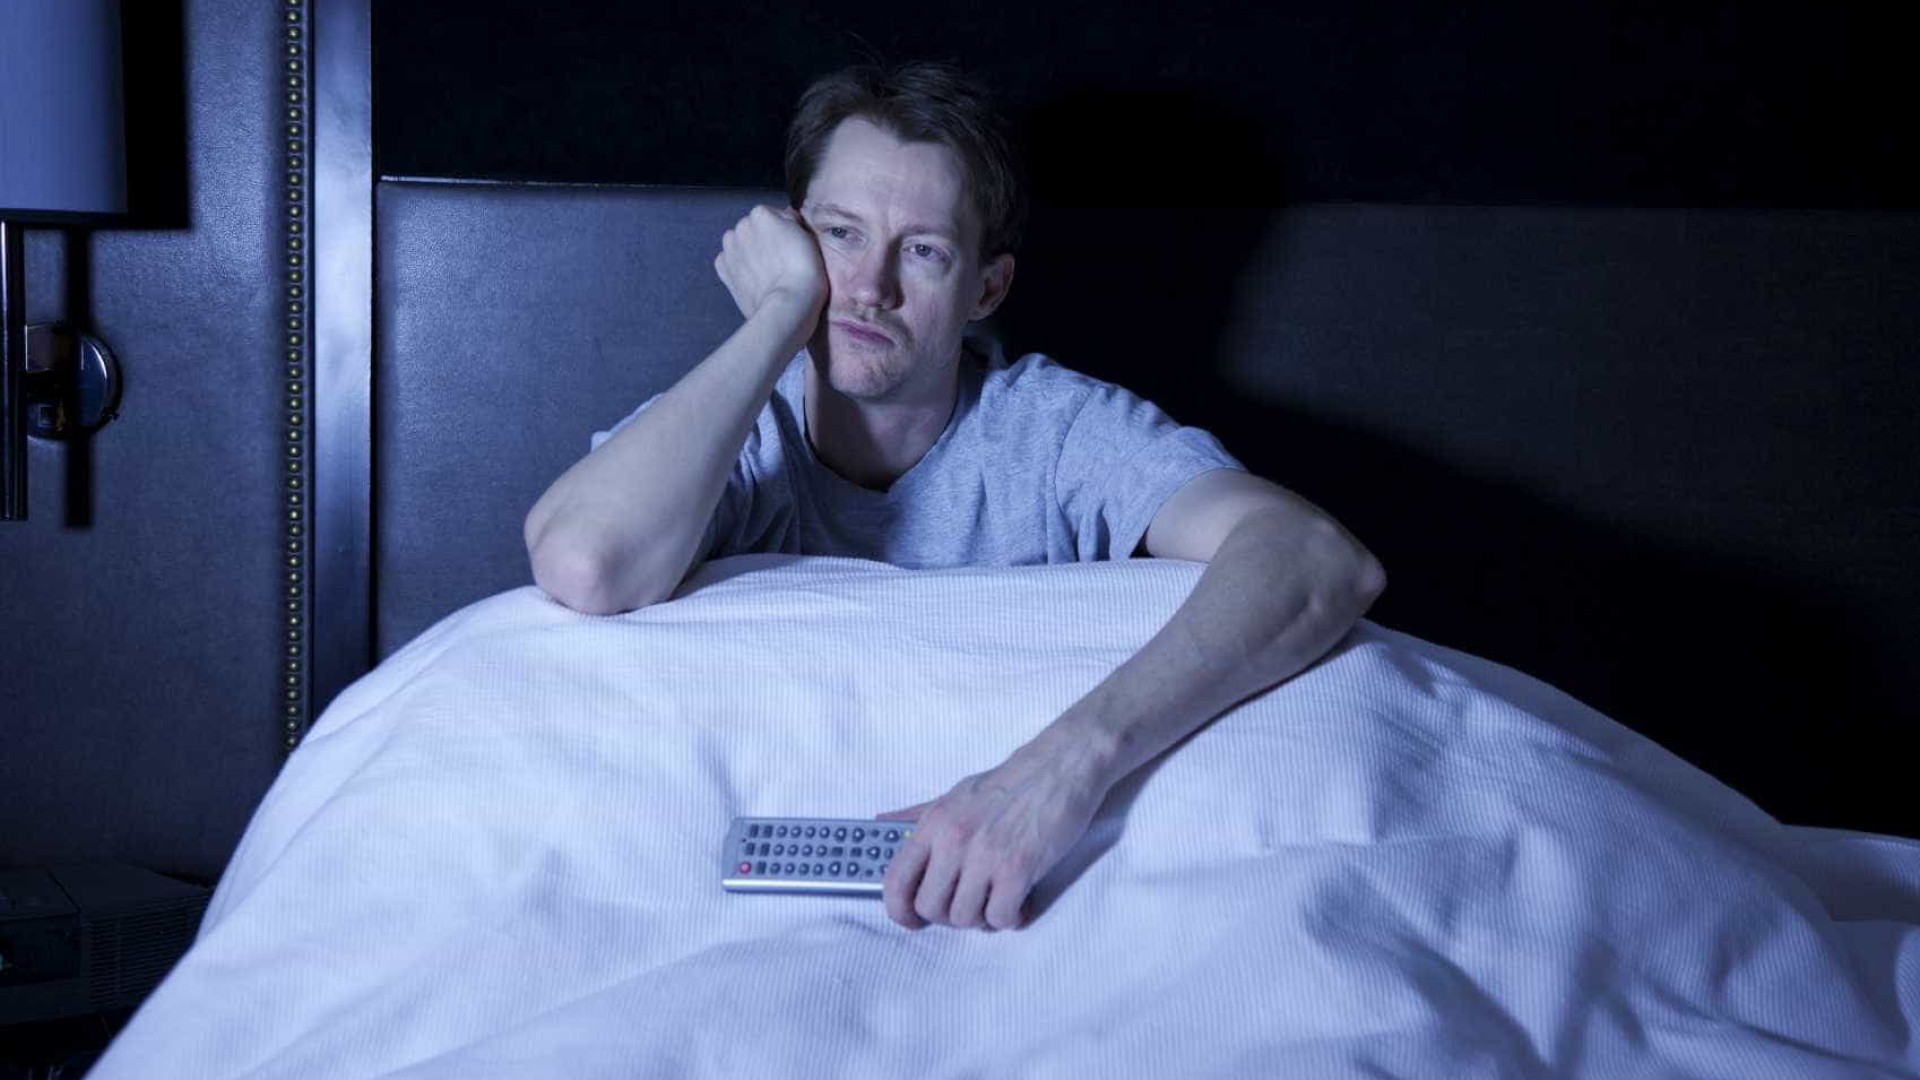 Fique por dentro de cinco consequências de 
dormir pouco